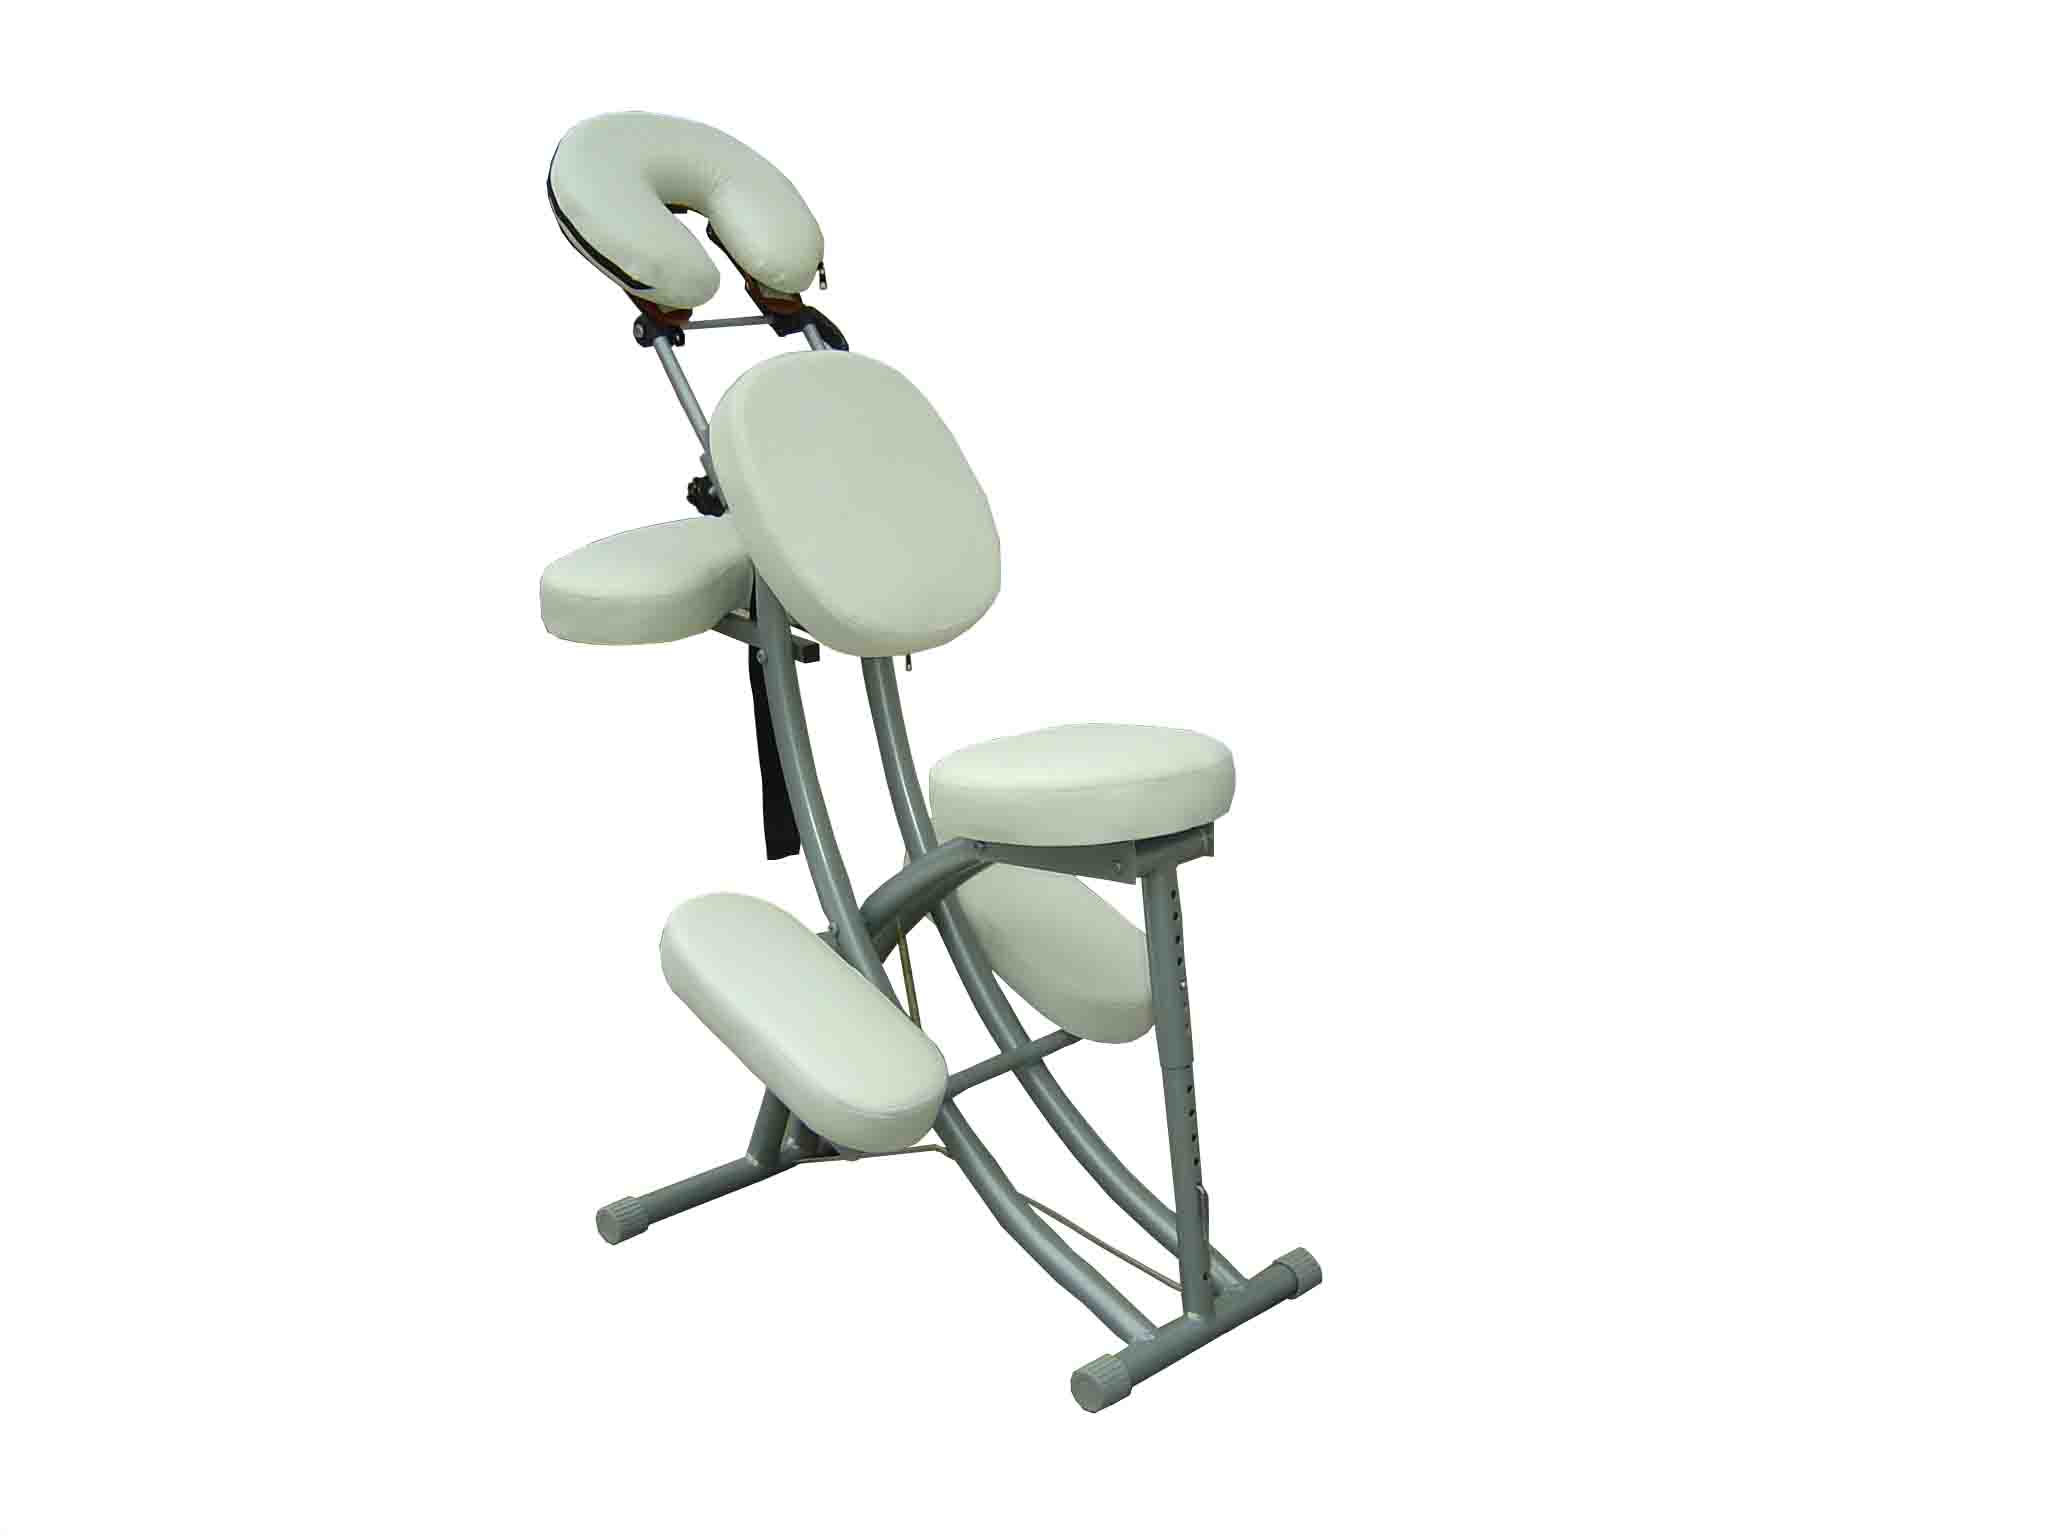  MCA-001 Aluminum Massage Chair (MCA-001 алюминиевый Массажное кресло)